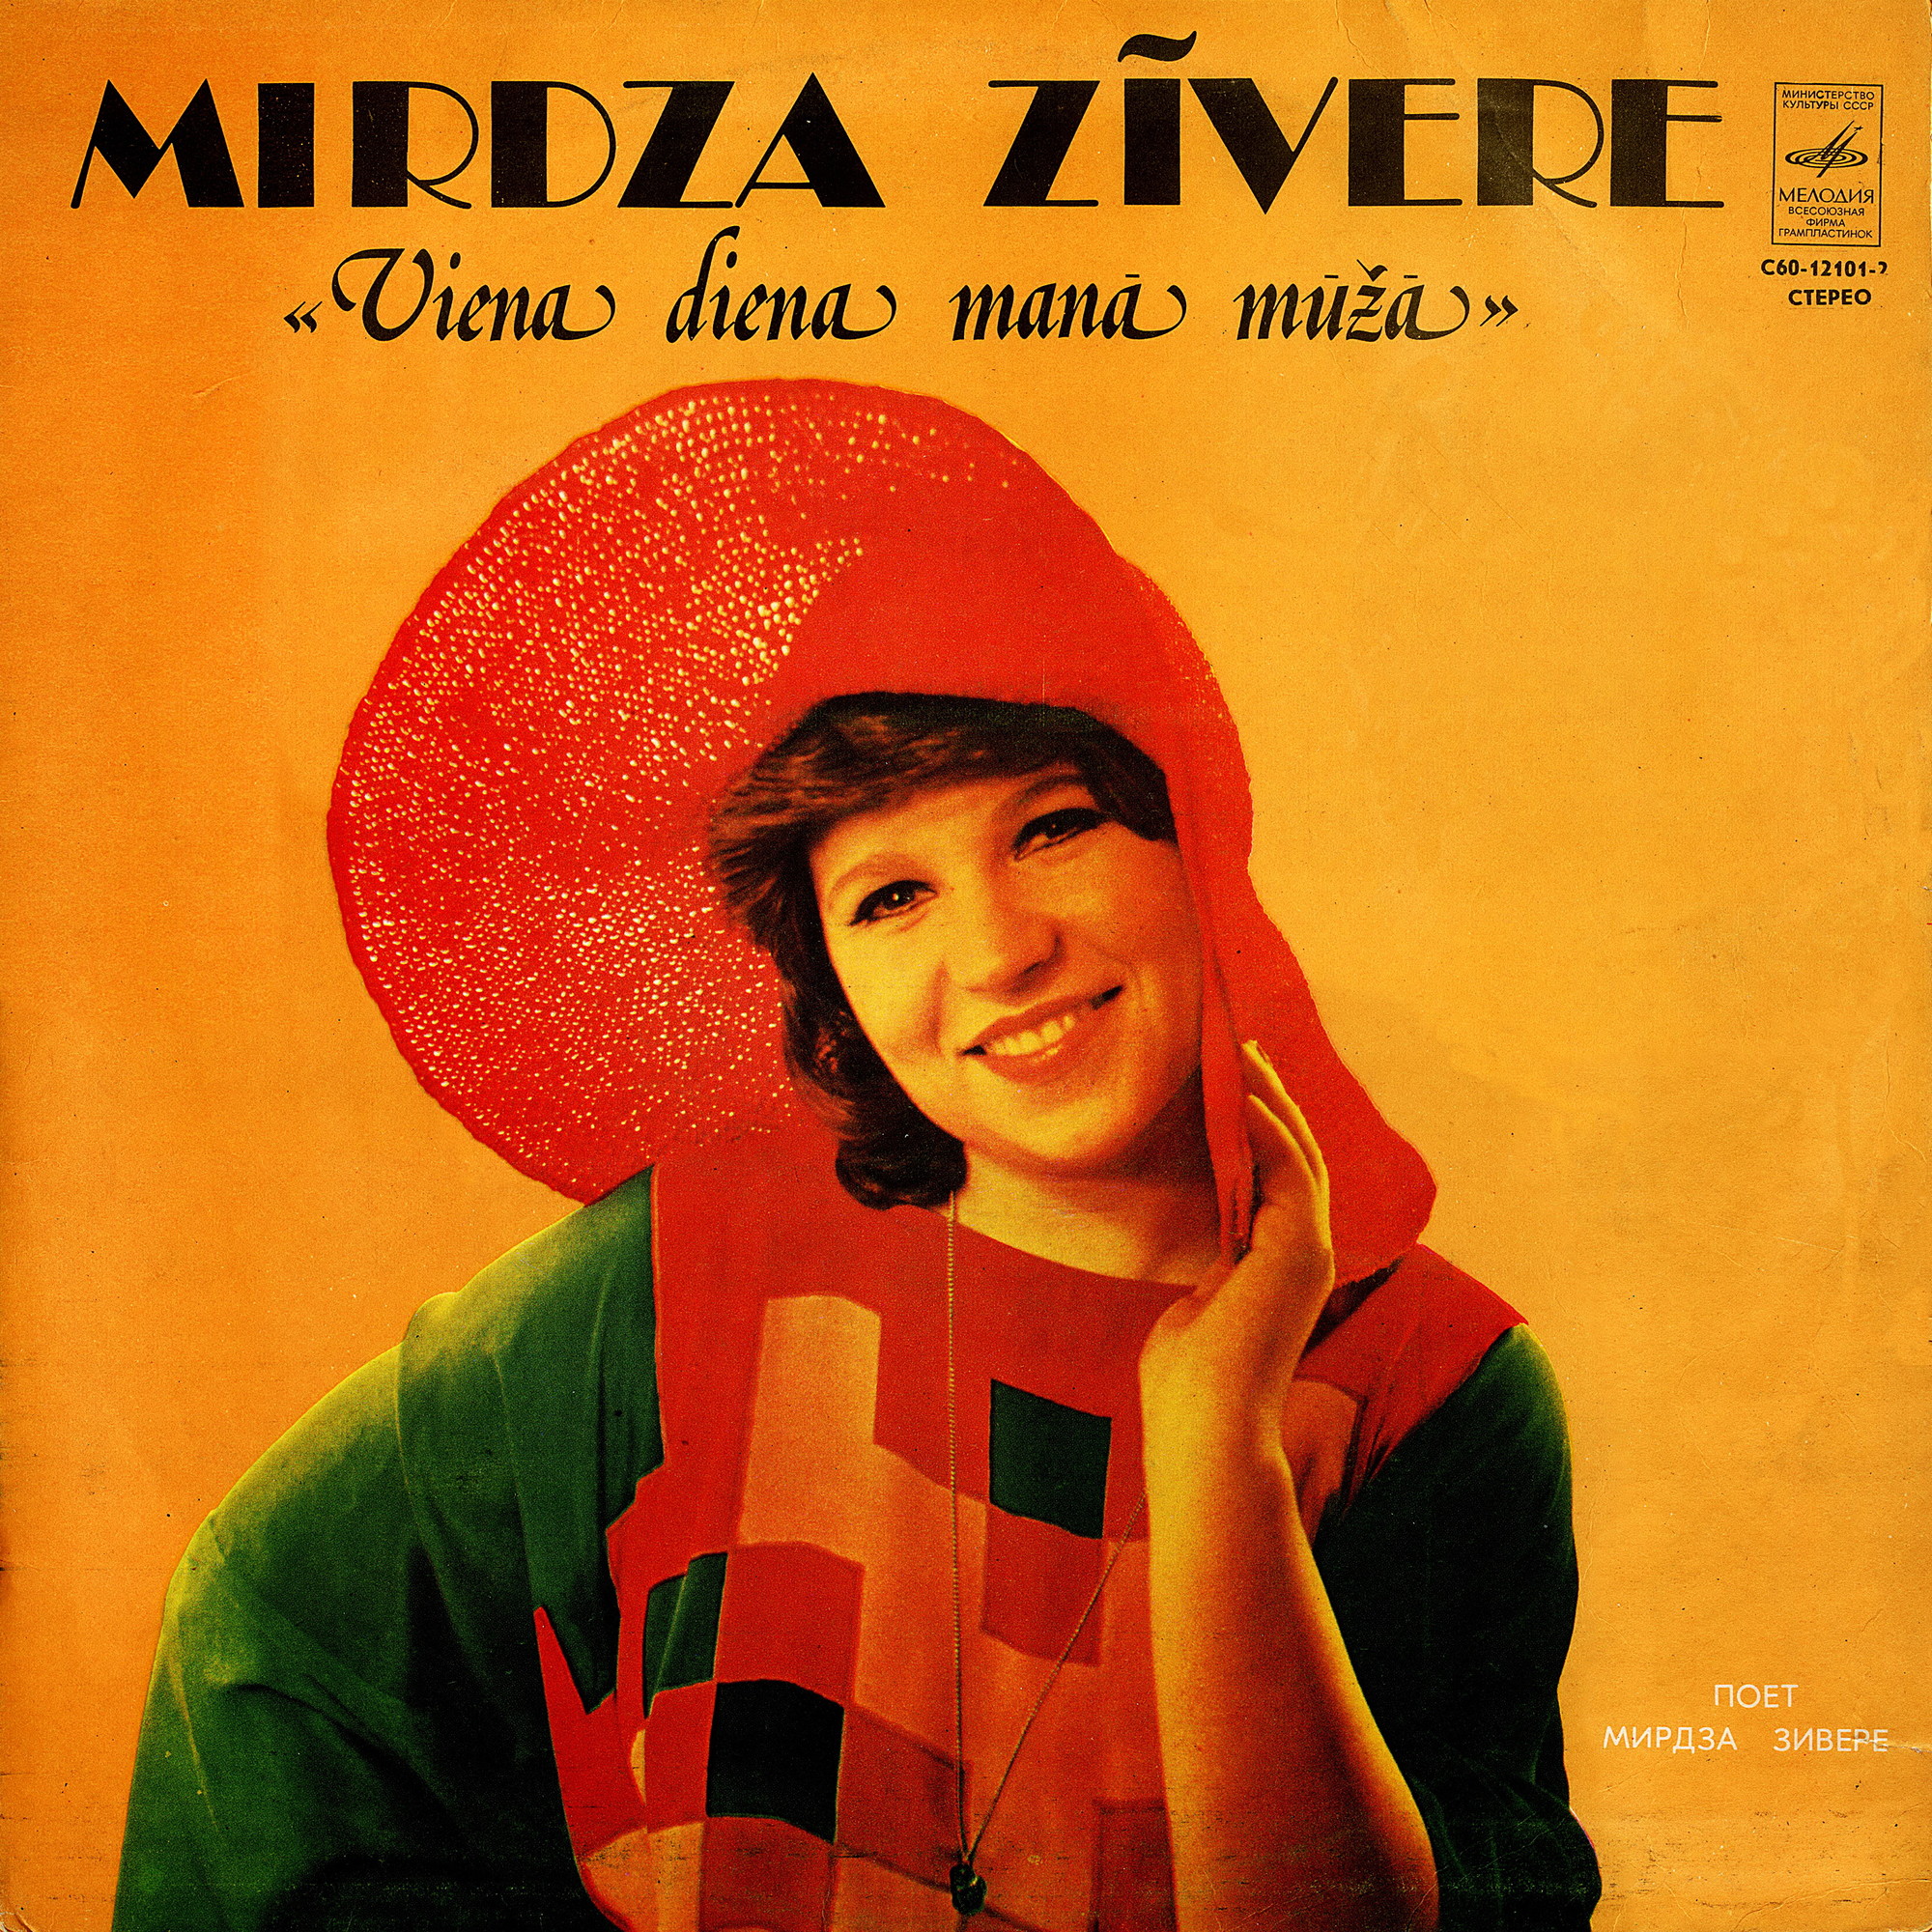 Мирдза ЗИВЕРЕ «Viena diena manā mūžā / Один день в моей жизни...» (на латышском языке)